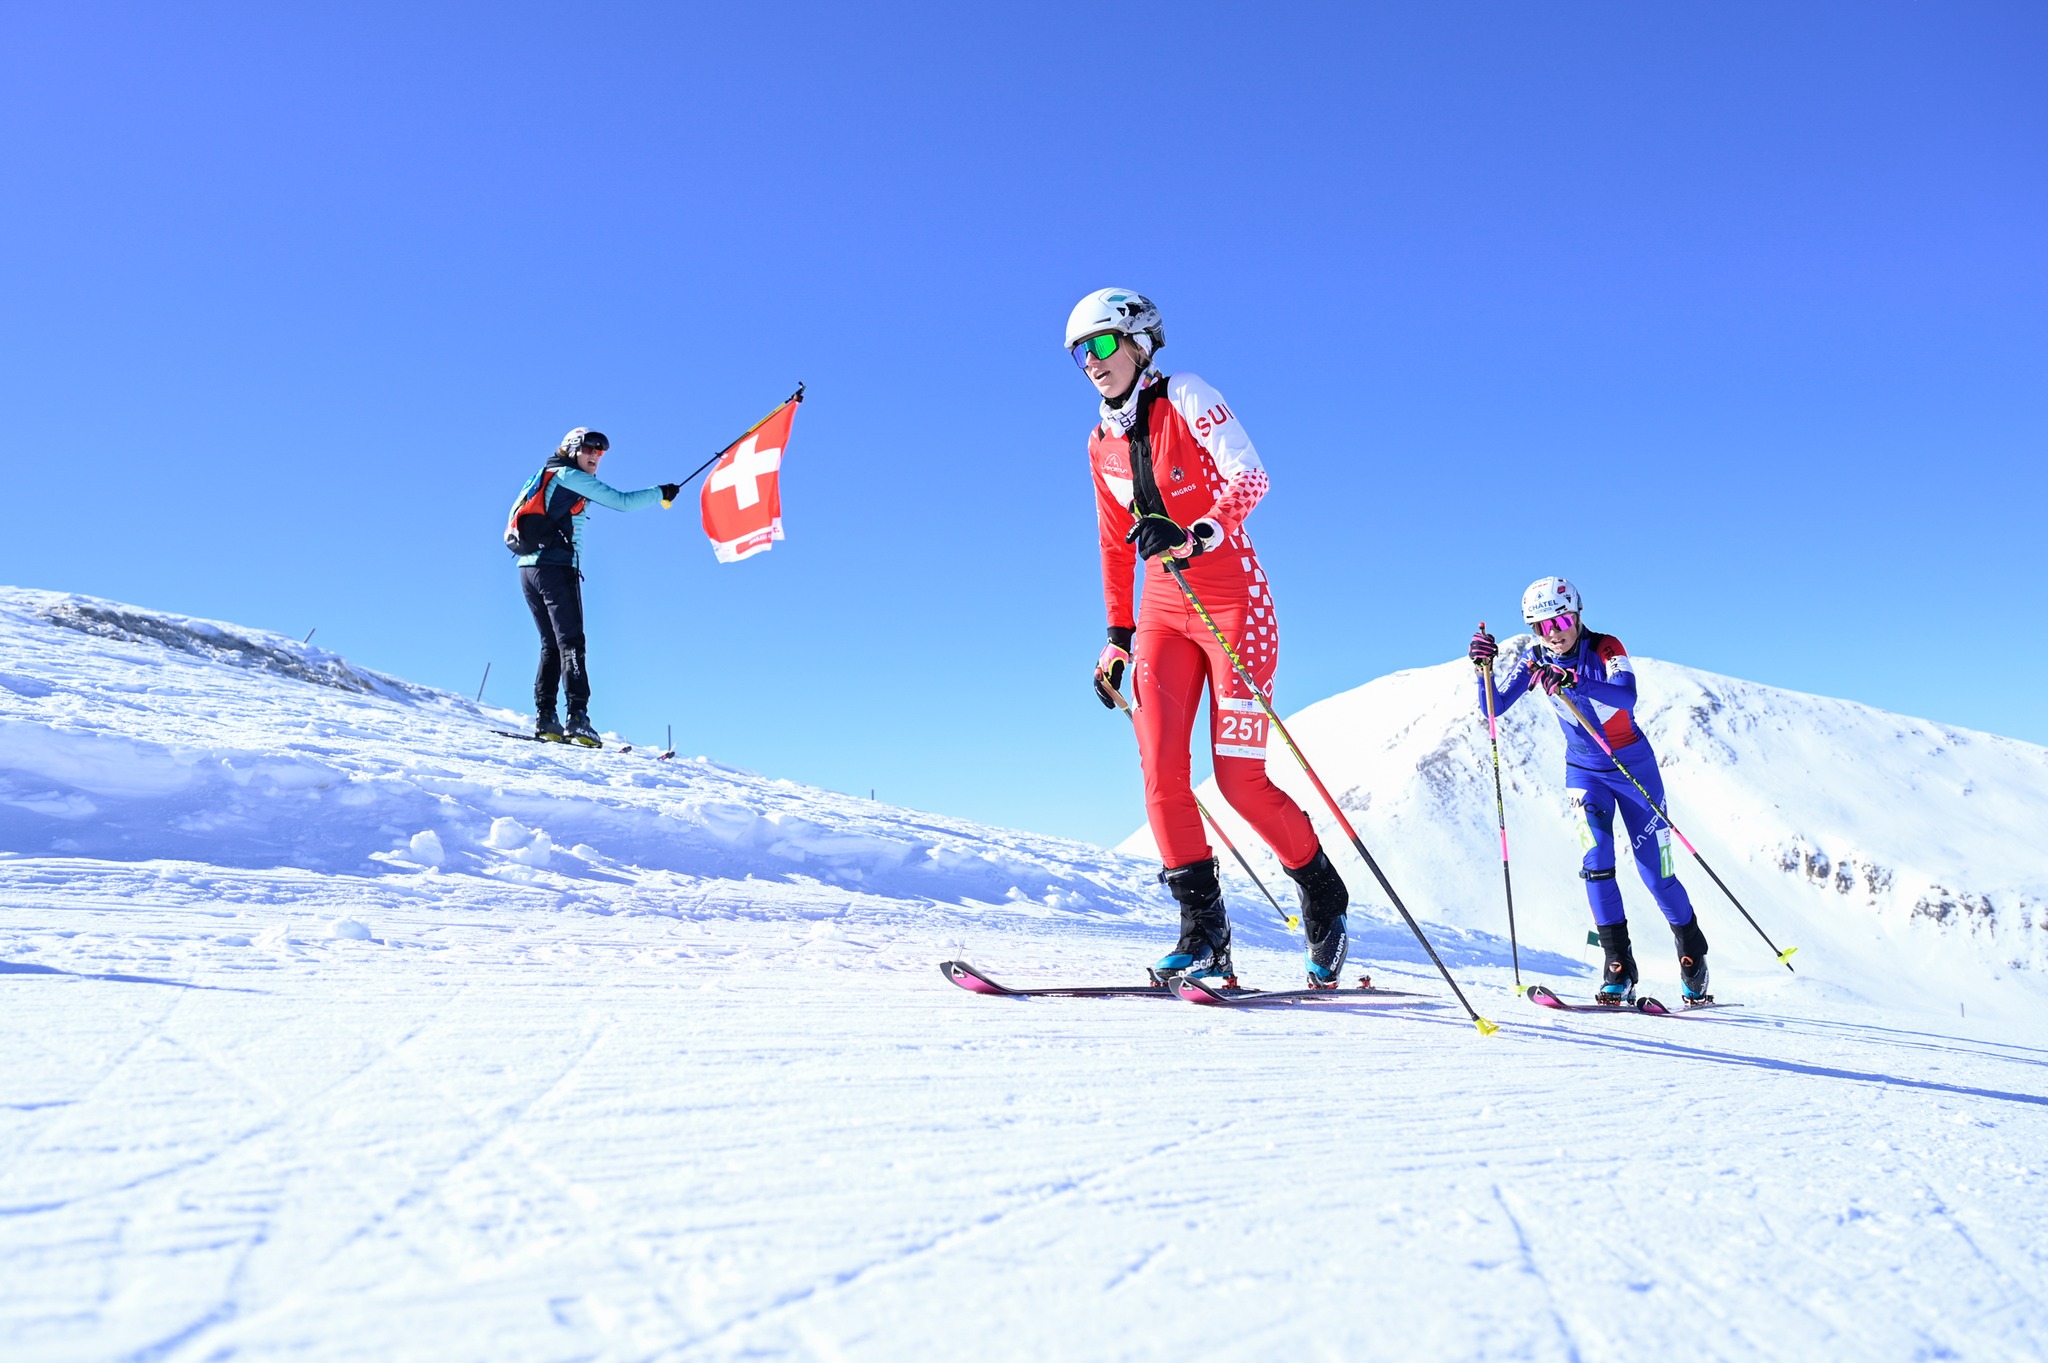 Ski alpinisme: Thibe Deseyn sur la plus haute marche du podium mondial de la verticale